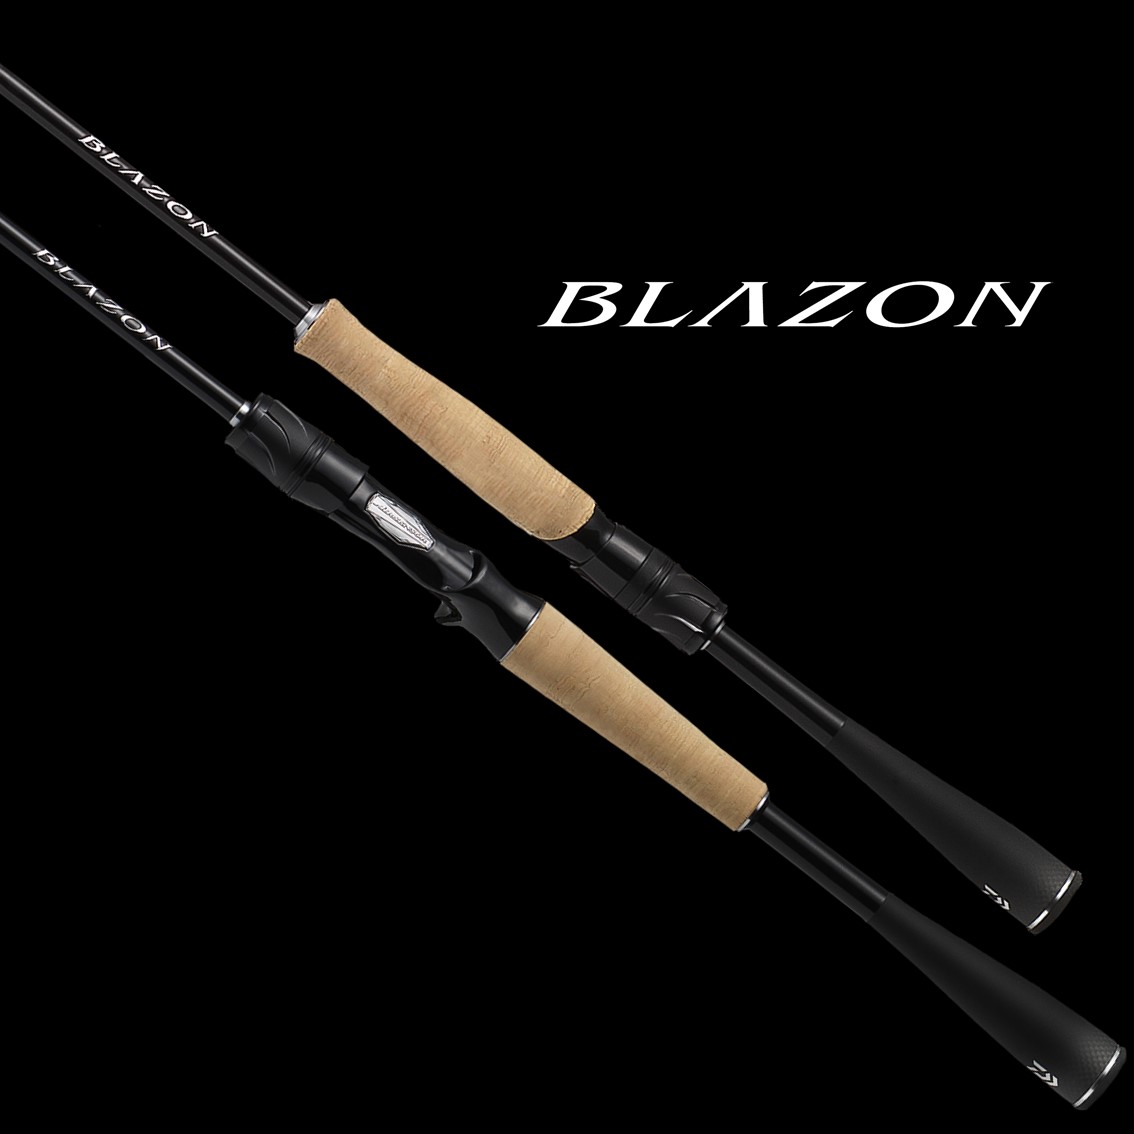 ダイワ ブレイゾン C610M-2 (バスロッド ベイト) - 釣り具の販売、通販